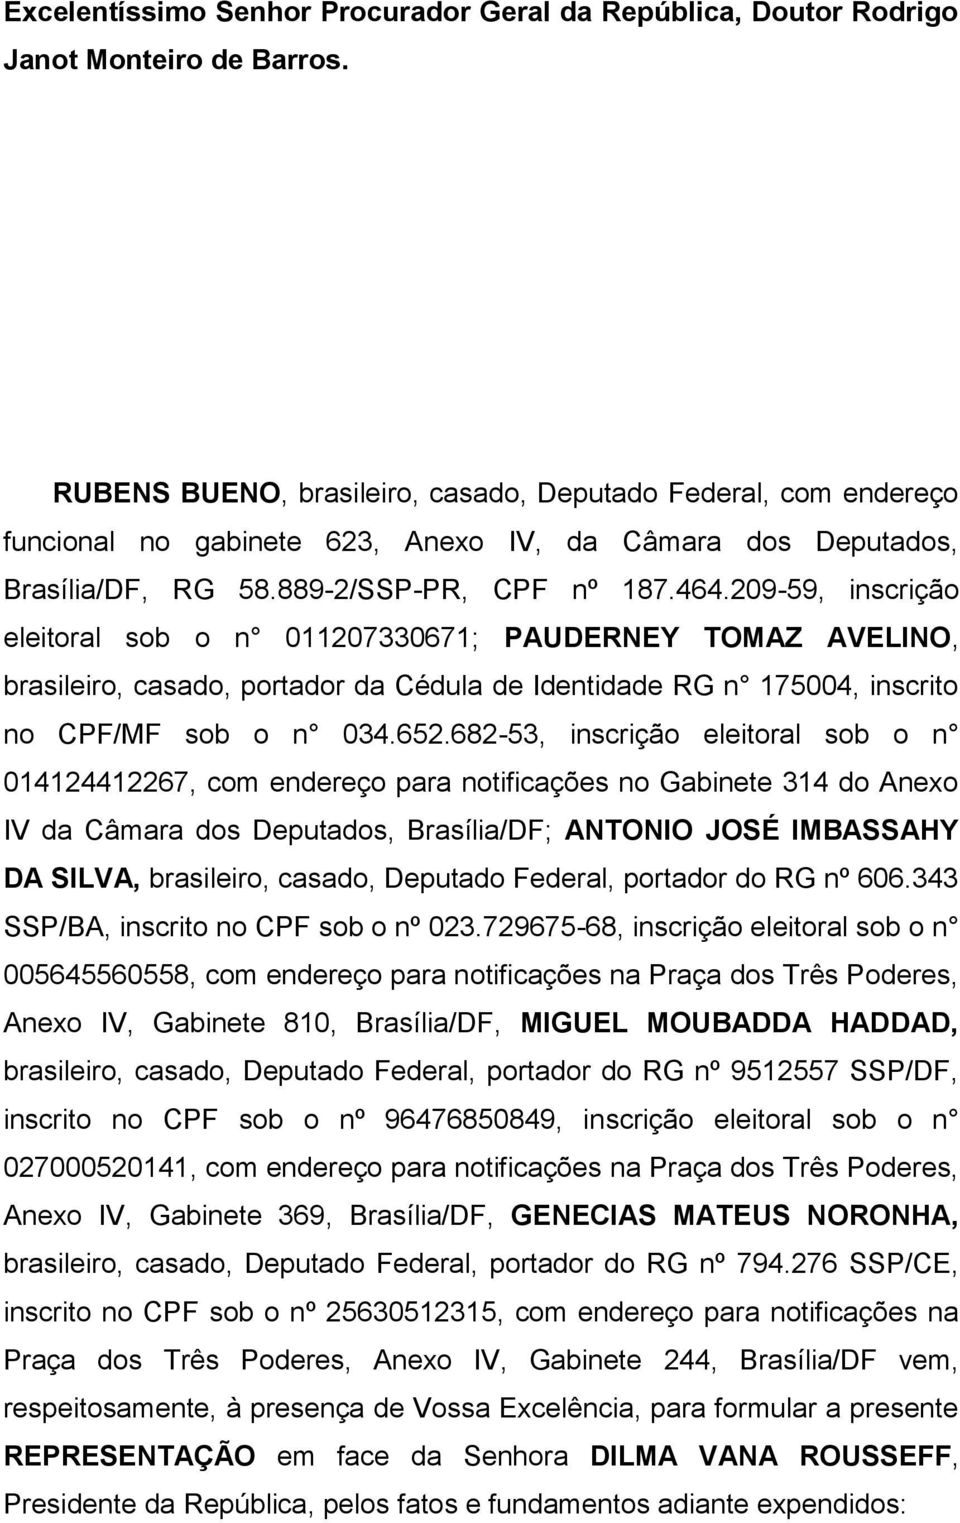 209-59, inscrição eleitoral sob o n 011207330671; PAUDERNEY TOMAZ AVELINO, brasileiro, casado, portador da Cédula de Identidade RG n 175004, inscrito no CPF/MF sob o n 034.652.